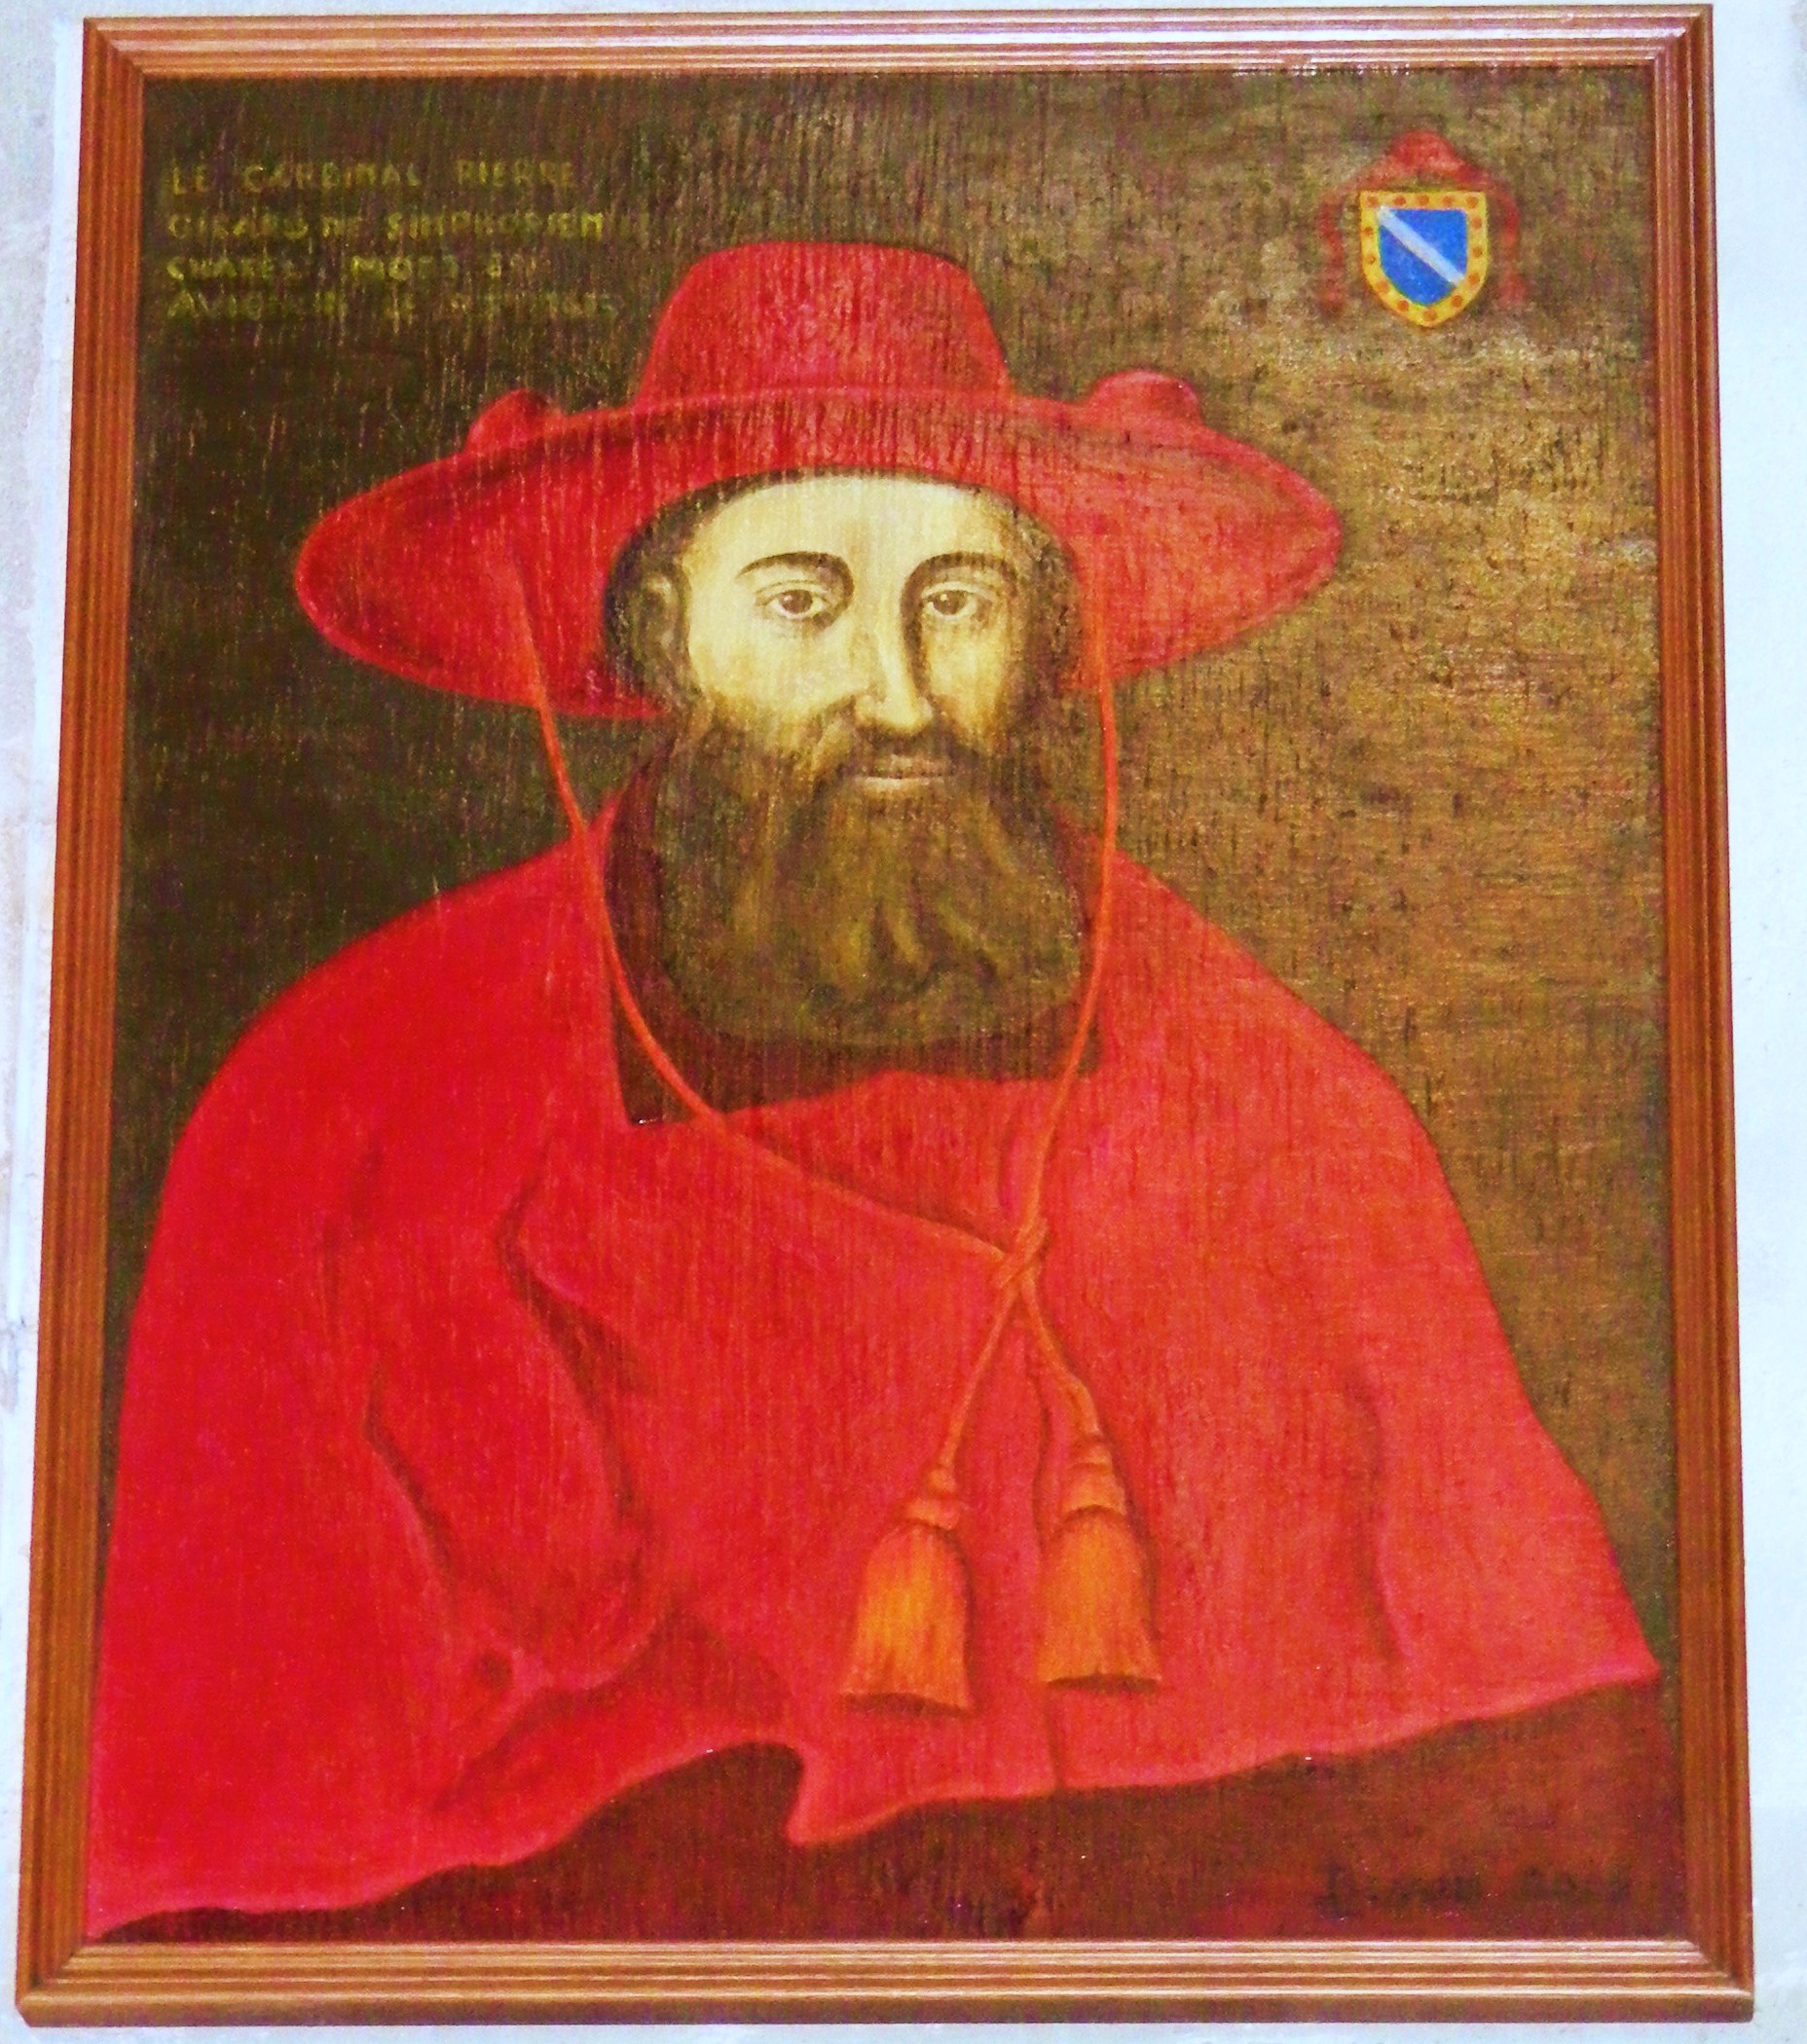 Pierre Girard (cardinal) - Wikipedia